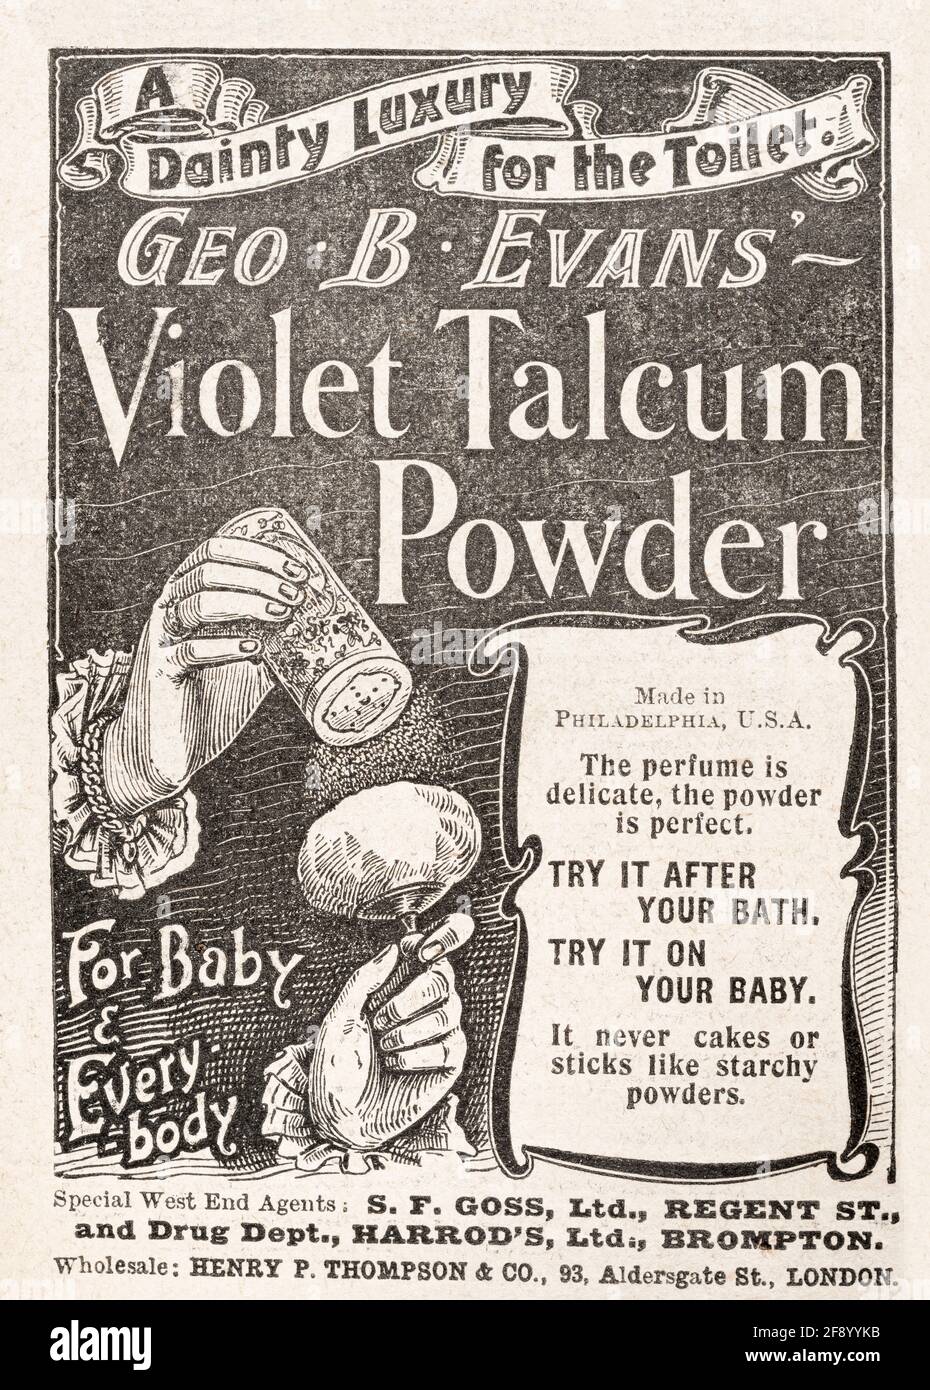 Werbung für alte viktorianische Hautpflege- und Schönheitsprodukte aus dem Jahr 1902 - Standards für die Vorwerbung. Alte Hautpflege-Werbung, Geschichte der Werbung. Stockfoto